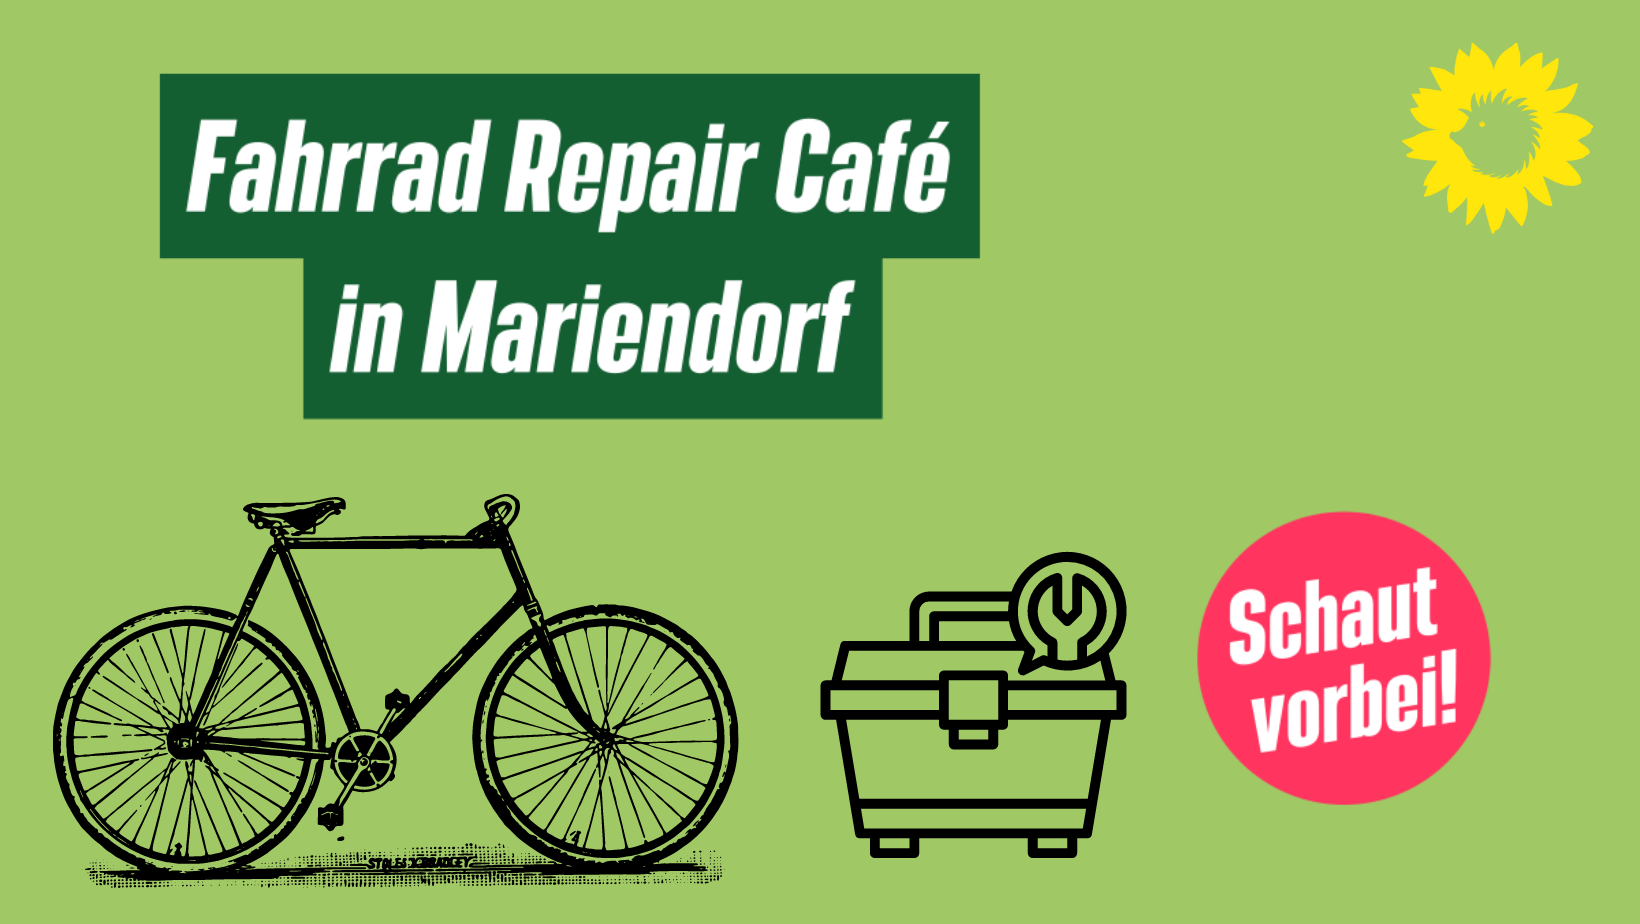 Auf dem Bild ist die Zeichnung eines Fahrrads und eines Werkzeugkastens vor einem grünen Hintergrund zu sehen. In dunkelgrüner Schrift steht dort "Fahrrad Repair Café"